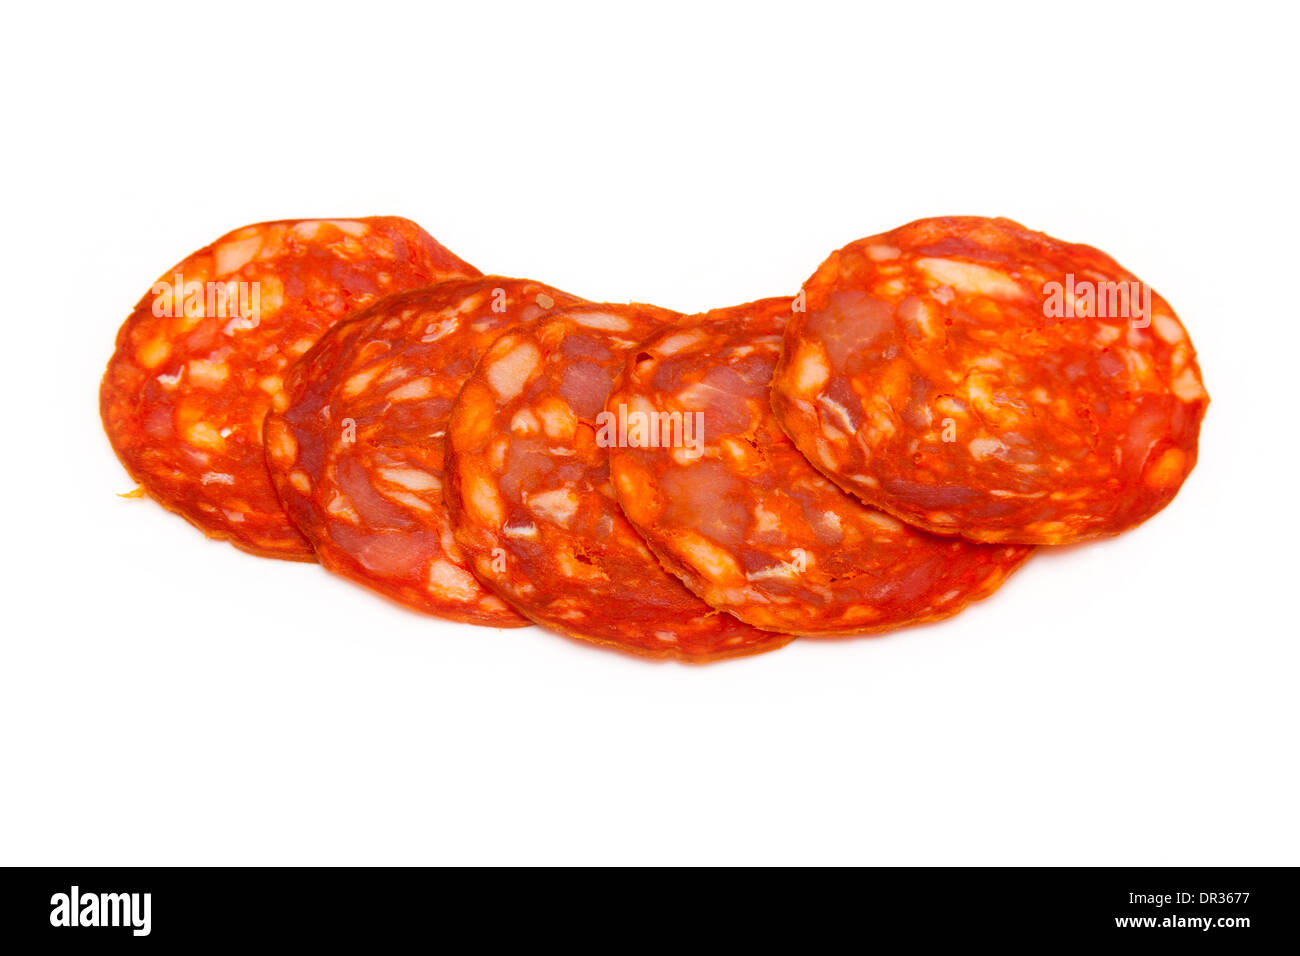 Sliced Spanish chorizo sausage isolated on a white studio background. Stock Photo